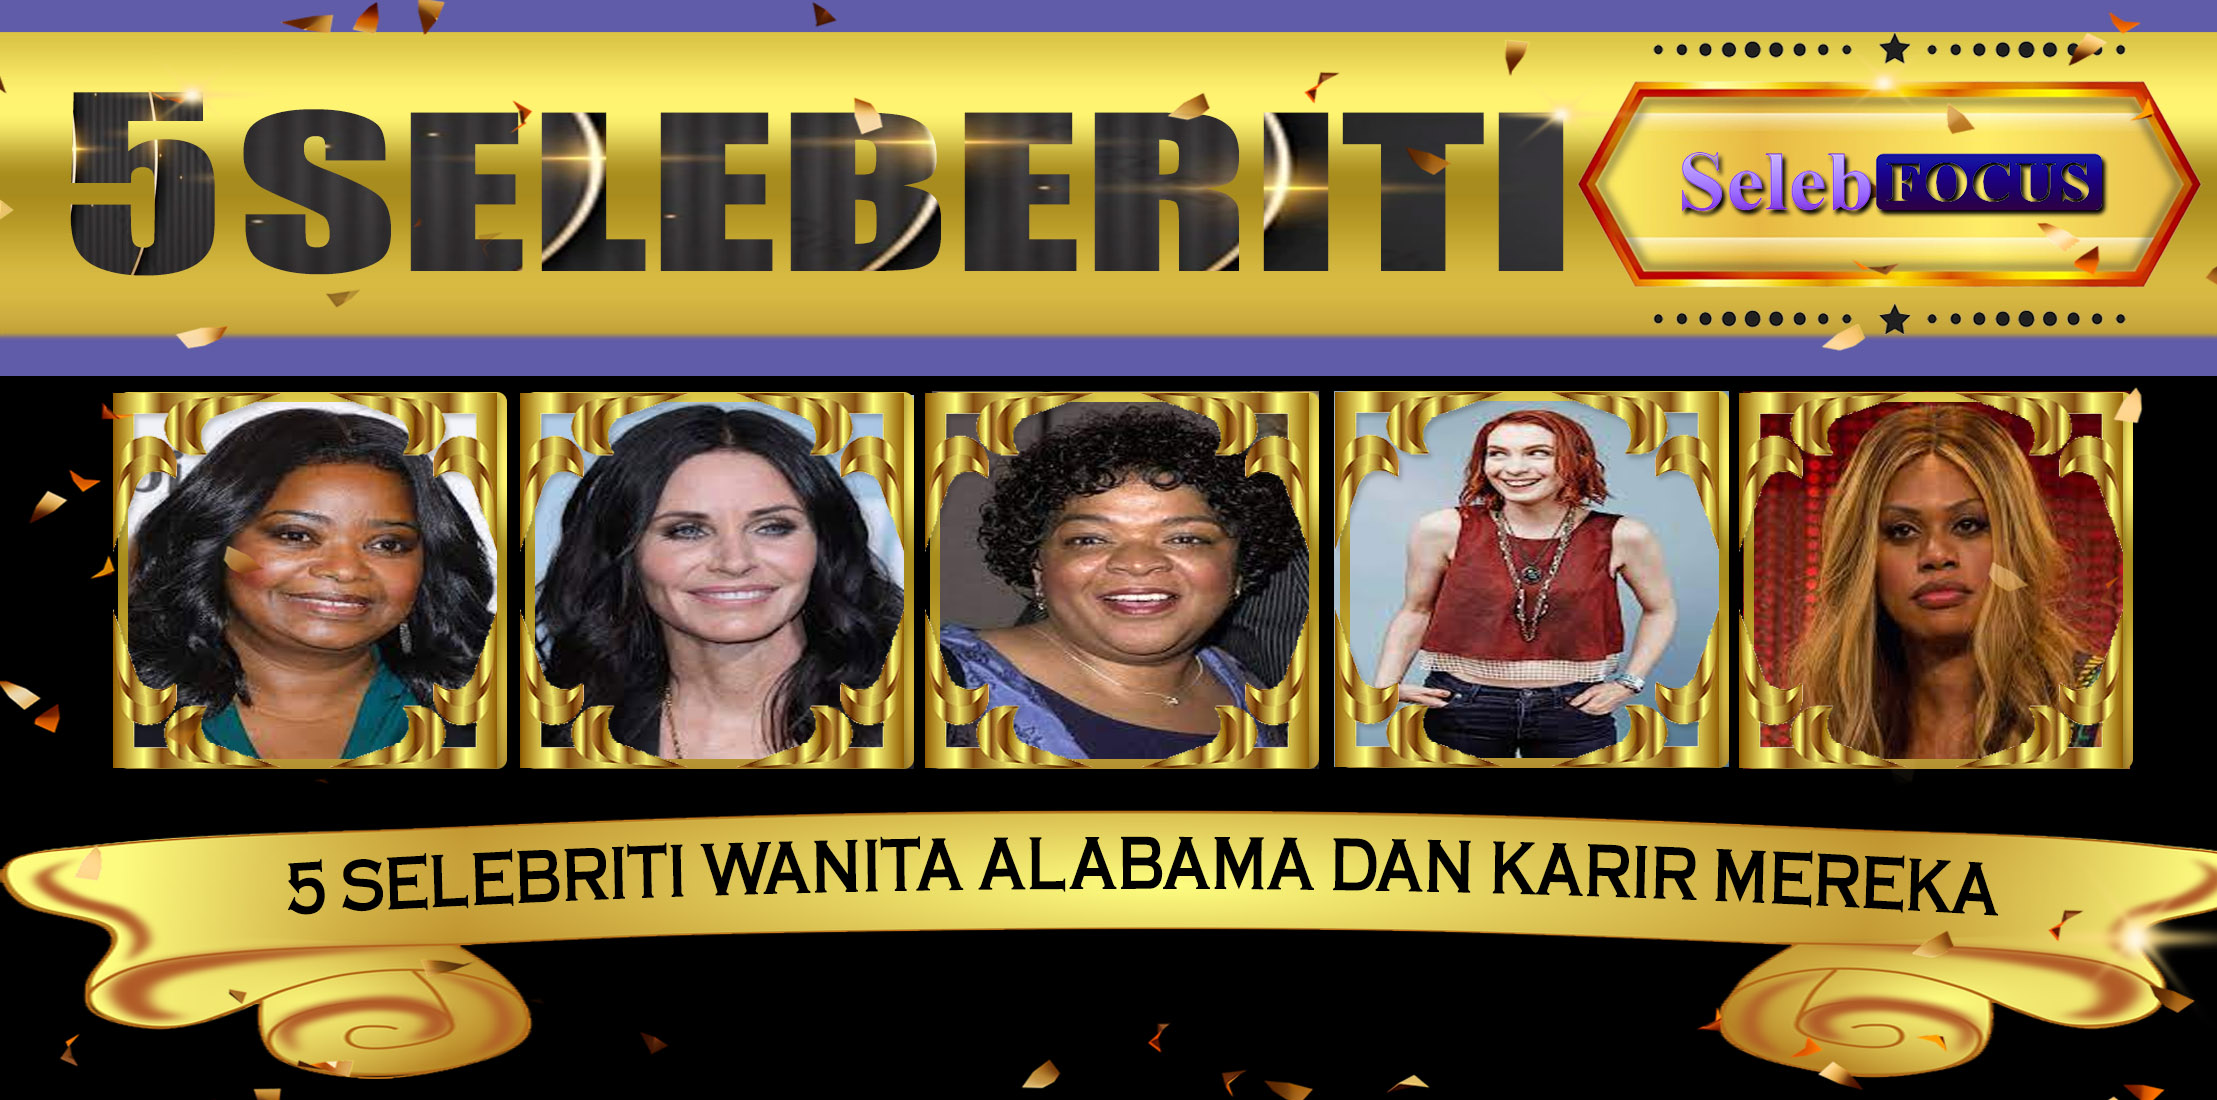 5 Selebriti Wanita Alabama dan Karir Mereka